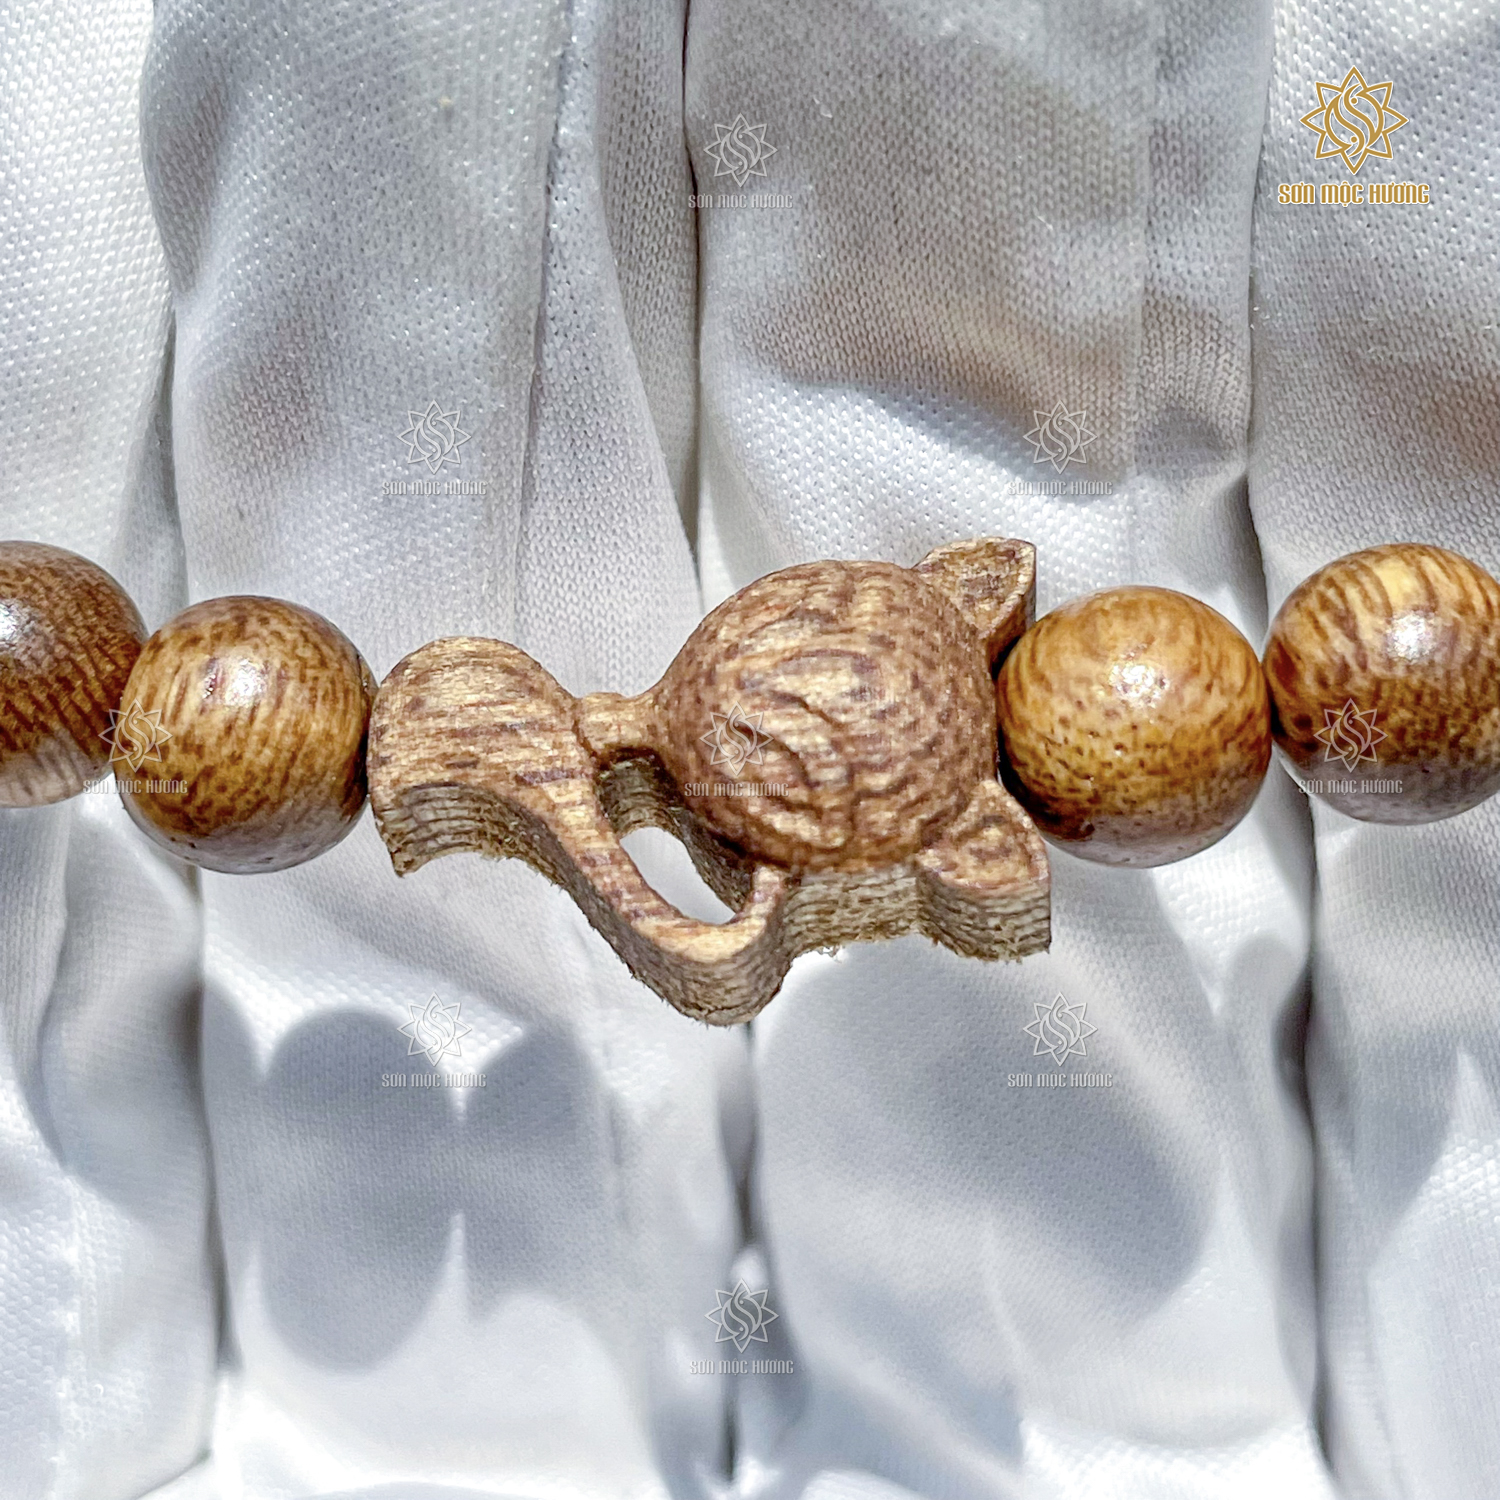 Vòng tay phong thủy tròn đơn mix charm trầm hương Sơn Mộc Hương đeo tay nam nữ mang ý nghĩa may mắn tài lộc